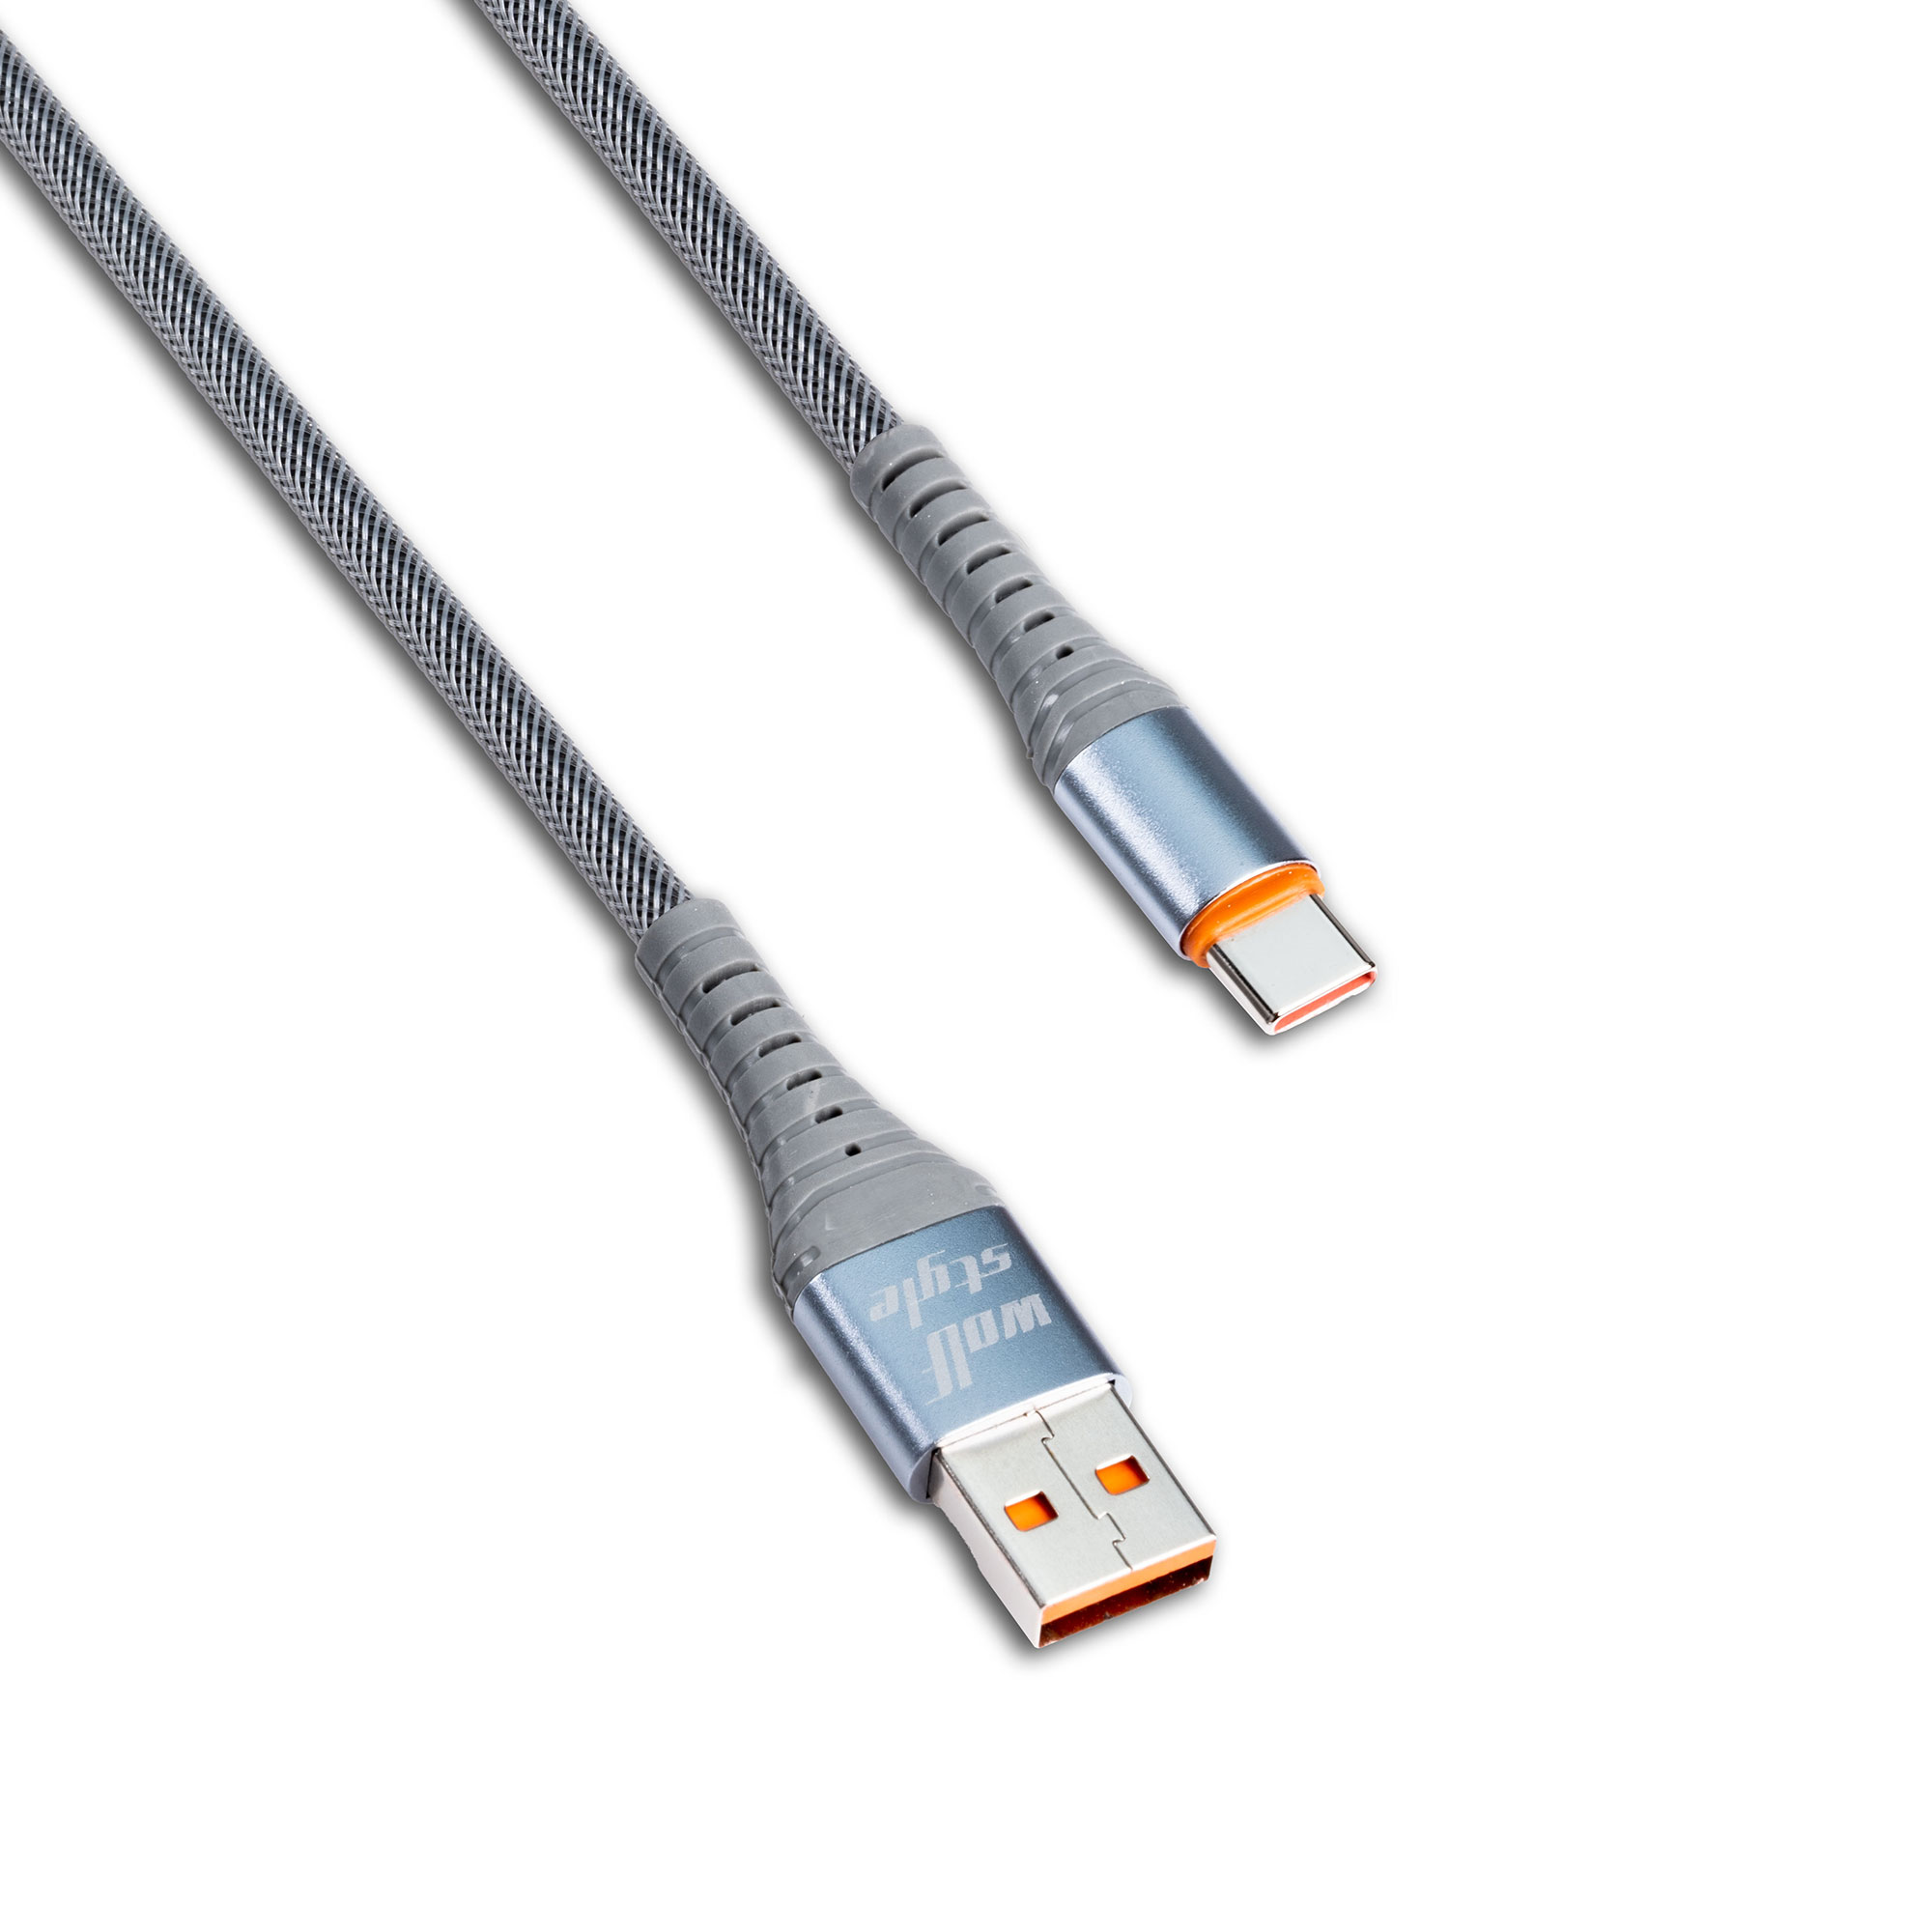 کابل تبدیل USB به USB-C فوموتک مدل WS-111 C طول 1 متر